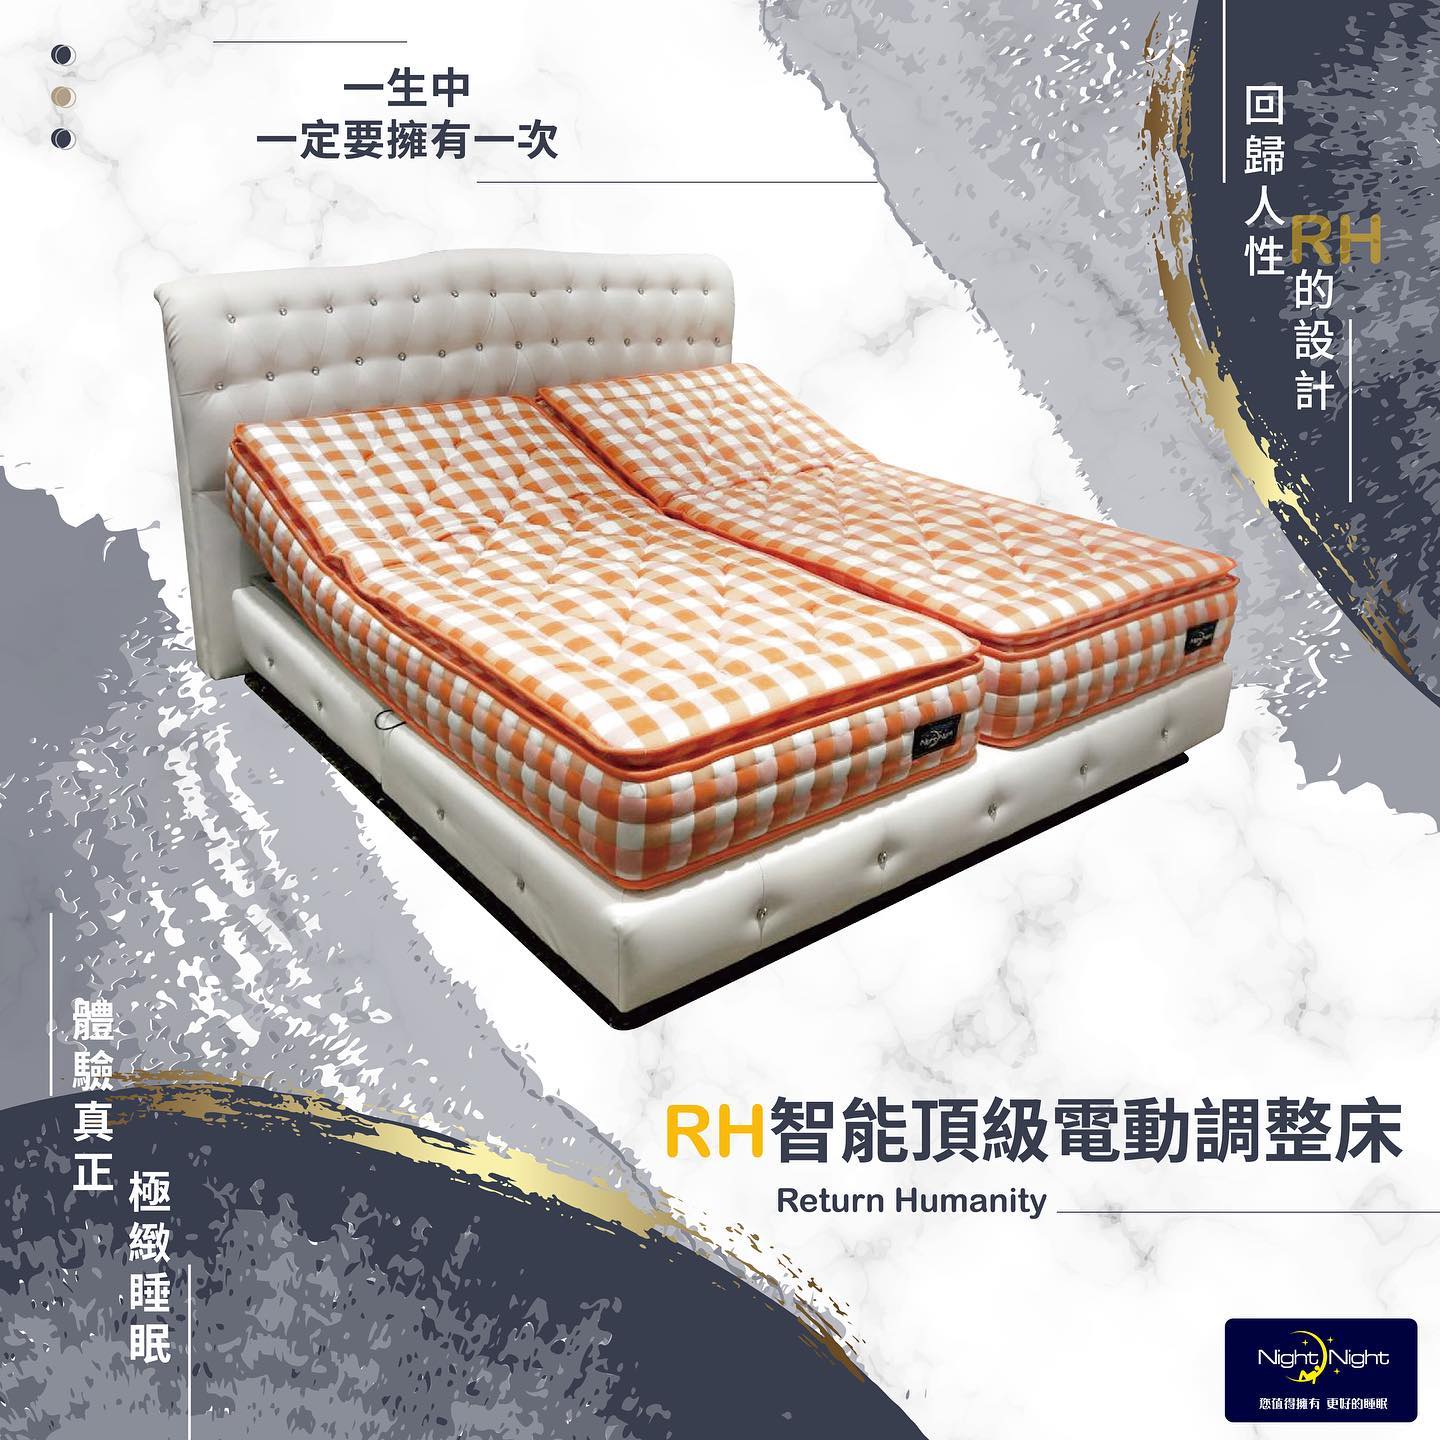 【久優國際家居】RH智能頂級電動調整床